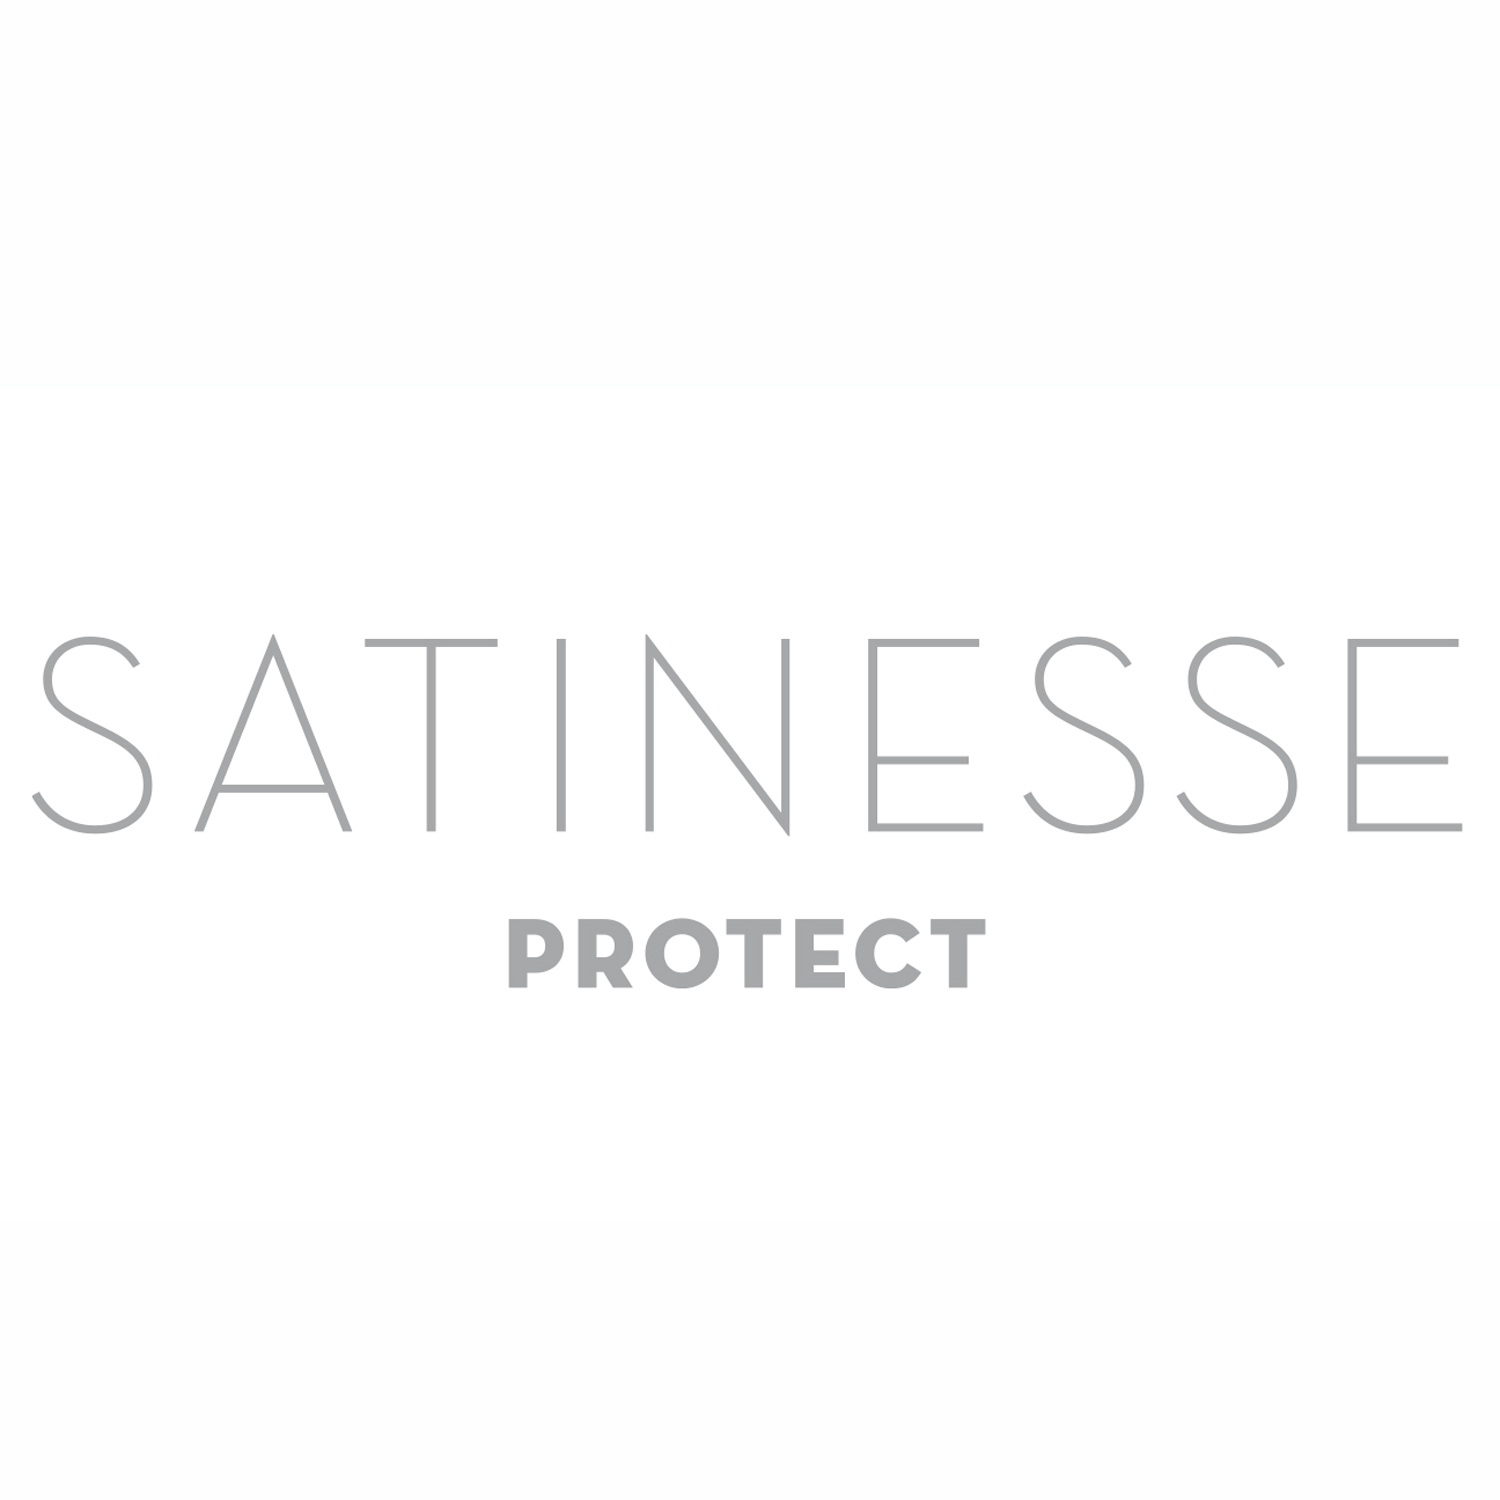 FORMESSE Matratzenschoner Satinesse Protect weiß 70x140cm